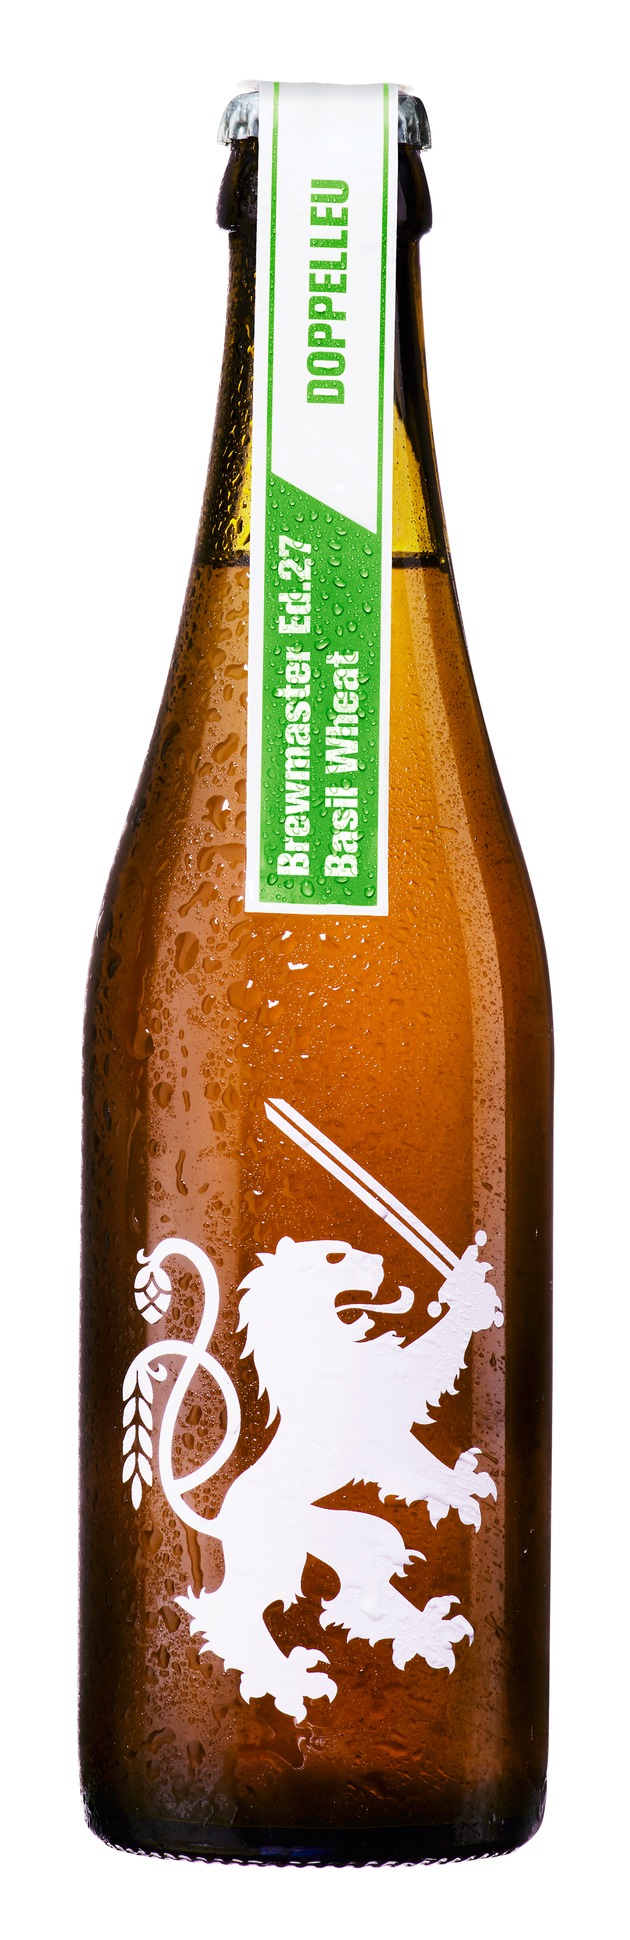 Toute la fraîcheur du printemps en bouteille: la Doppelleu Brewmaster Limited Ed. 27 Basil Wheat avec du basilic fraîchement récolté.